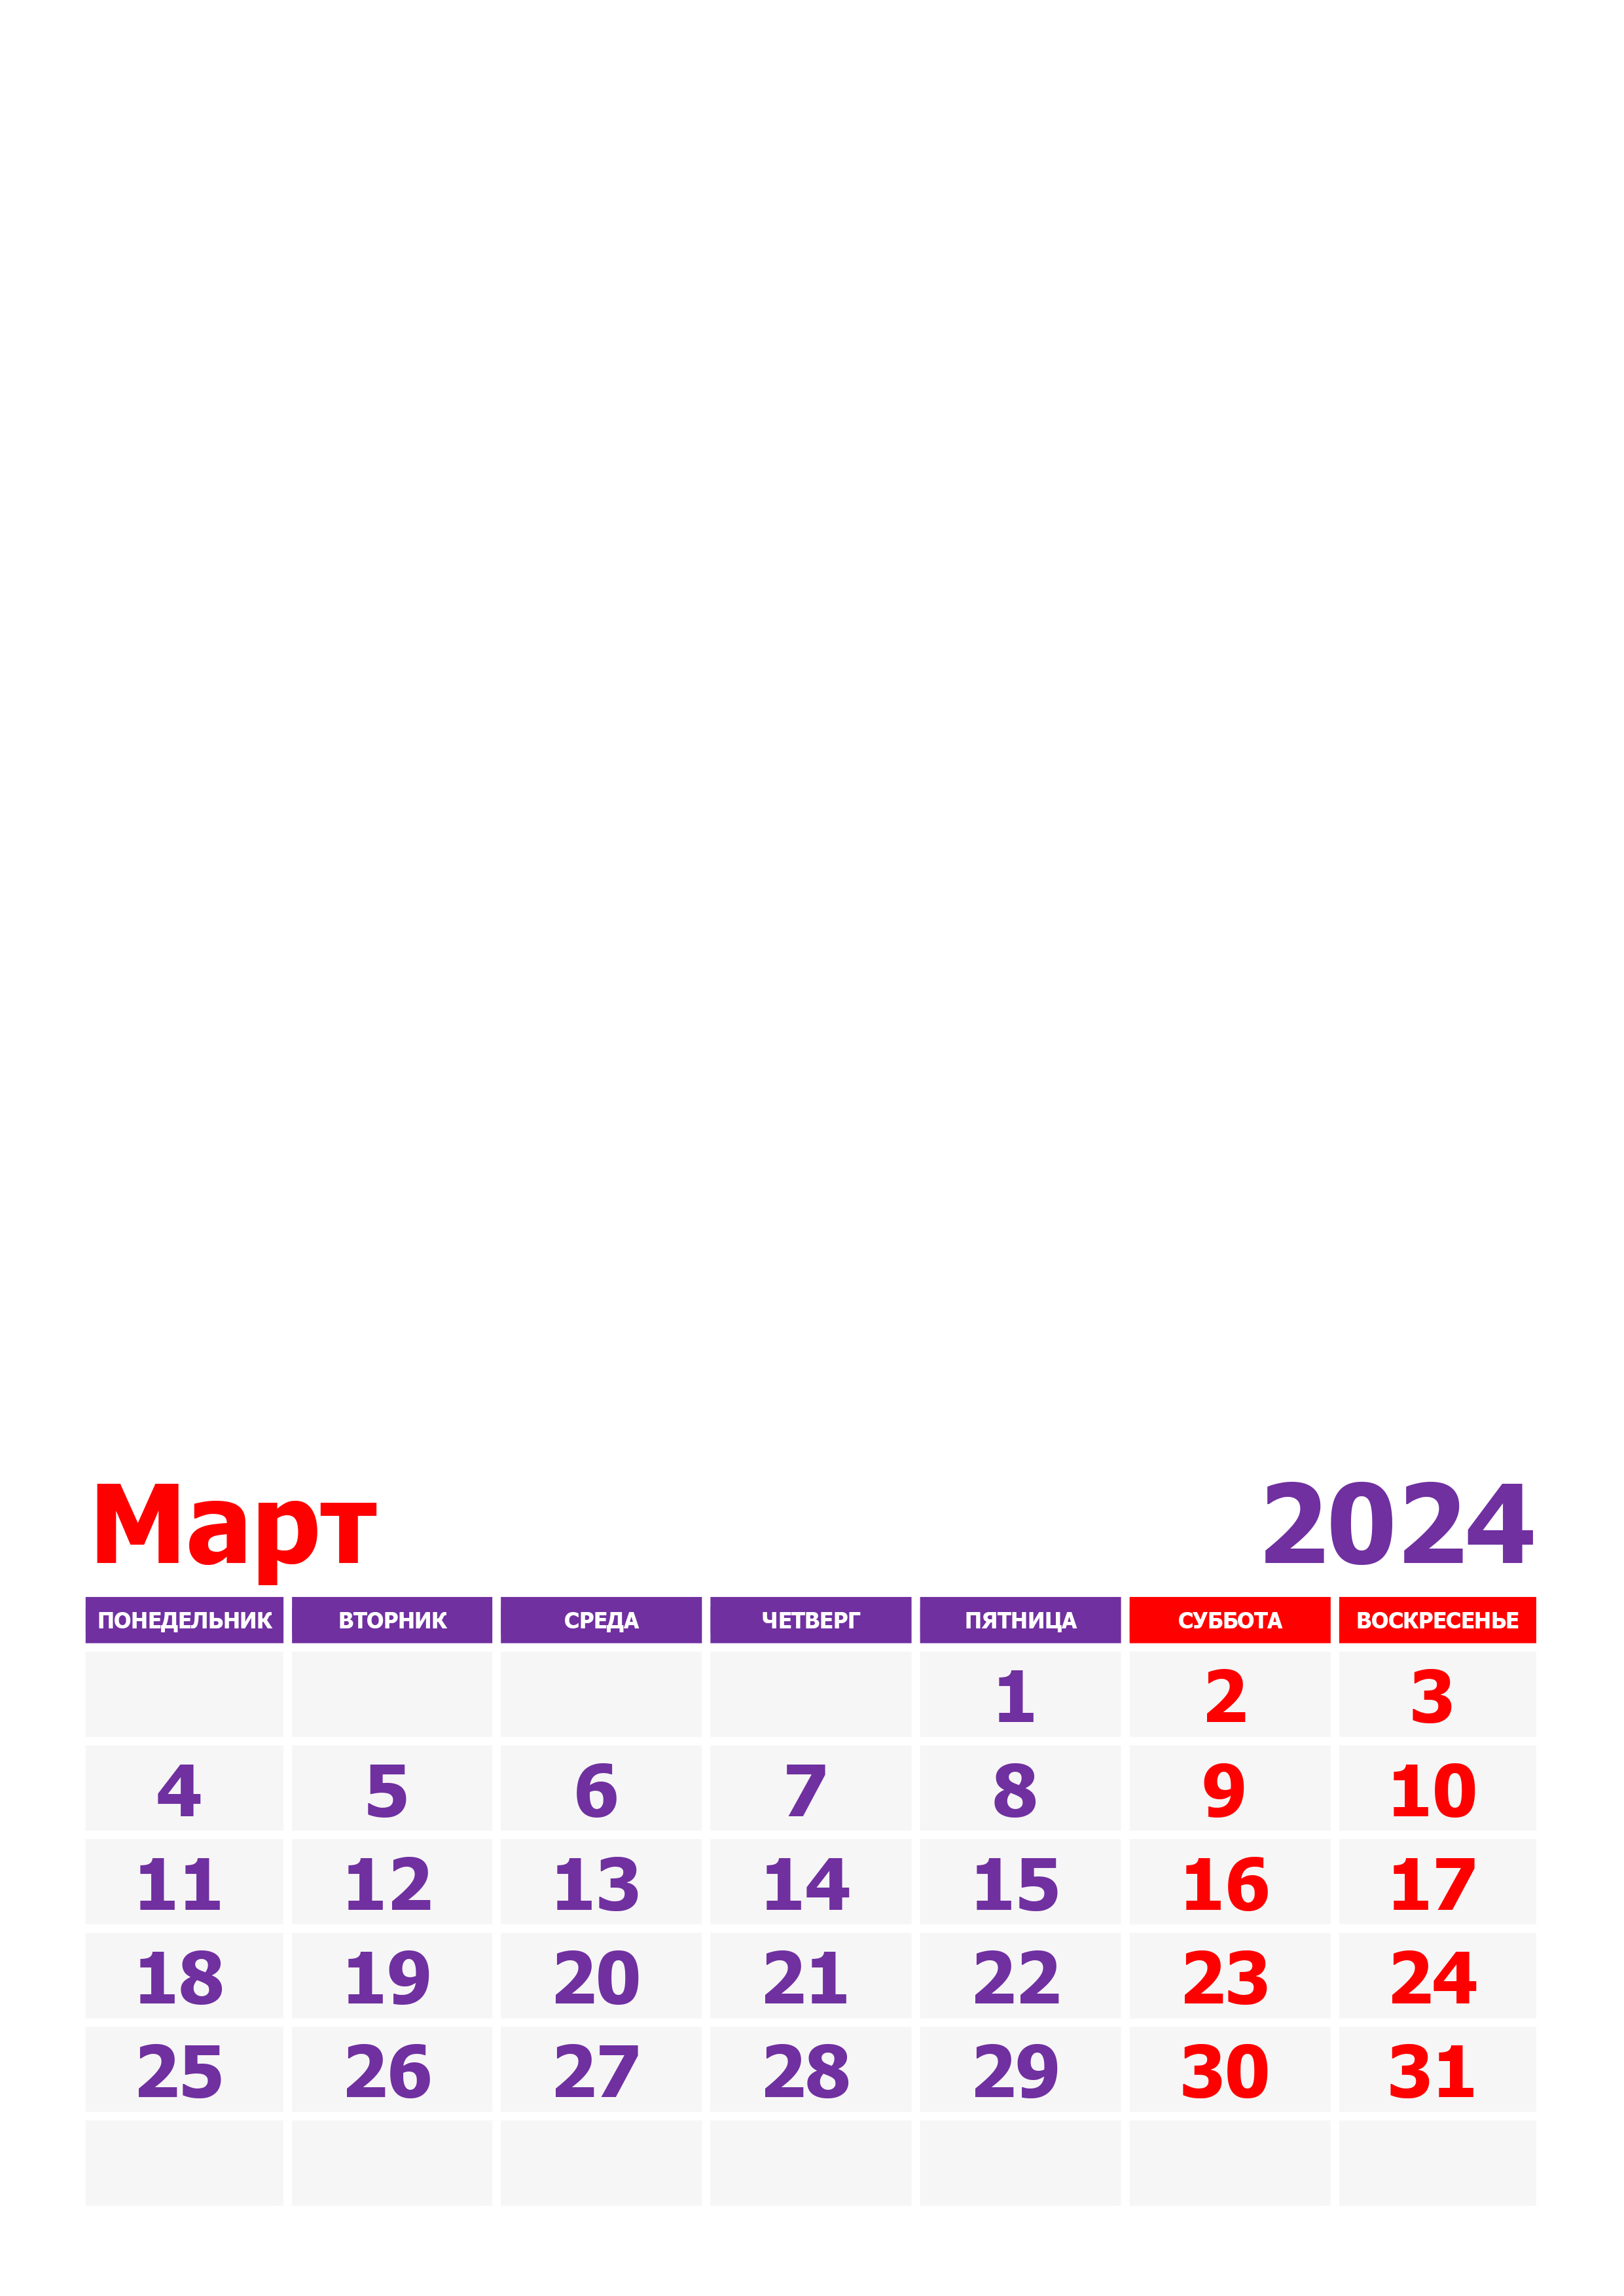 Ближайшие праздники в марте 2024. Календарь март 2024. Календарь на март 2024 года. Rfktylfhm YF vdhnn 2024. Календарб Марти 2024.